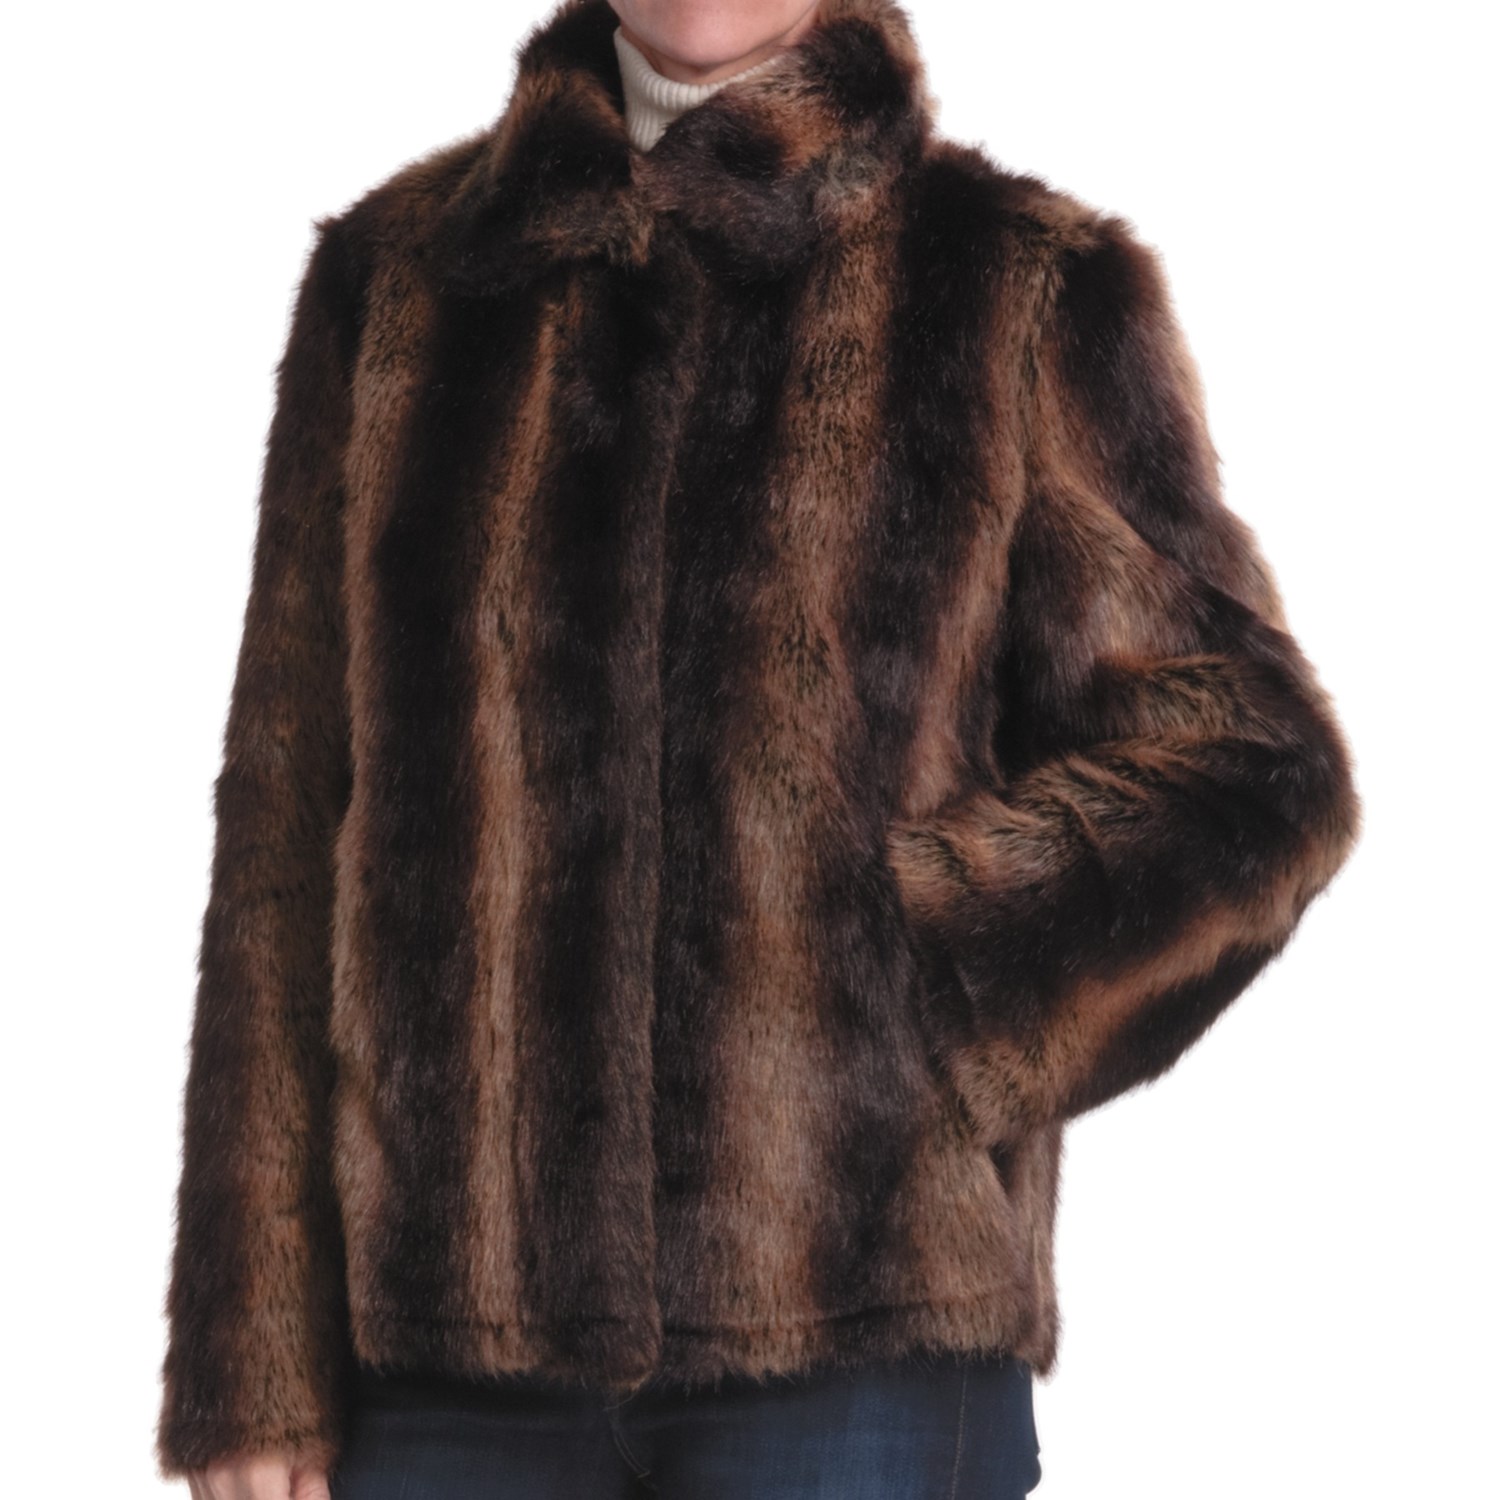  Parkhurst Reversible Faux Fur Jacket (For Women 